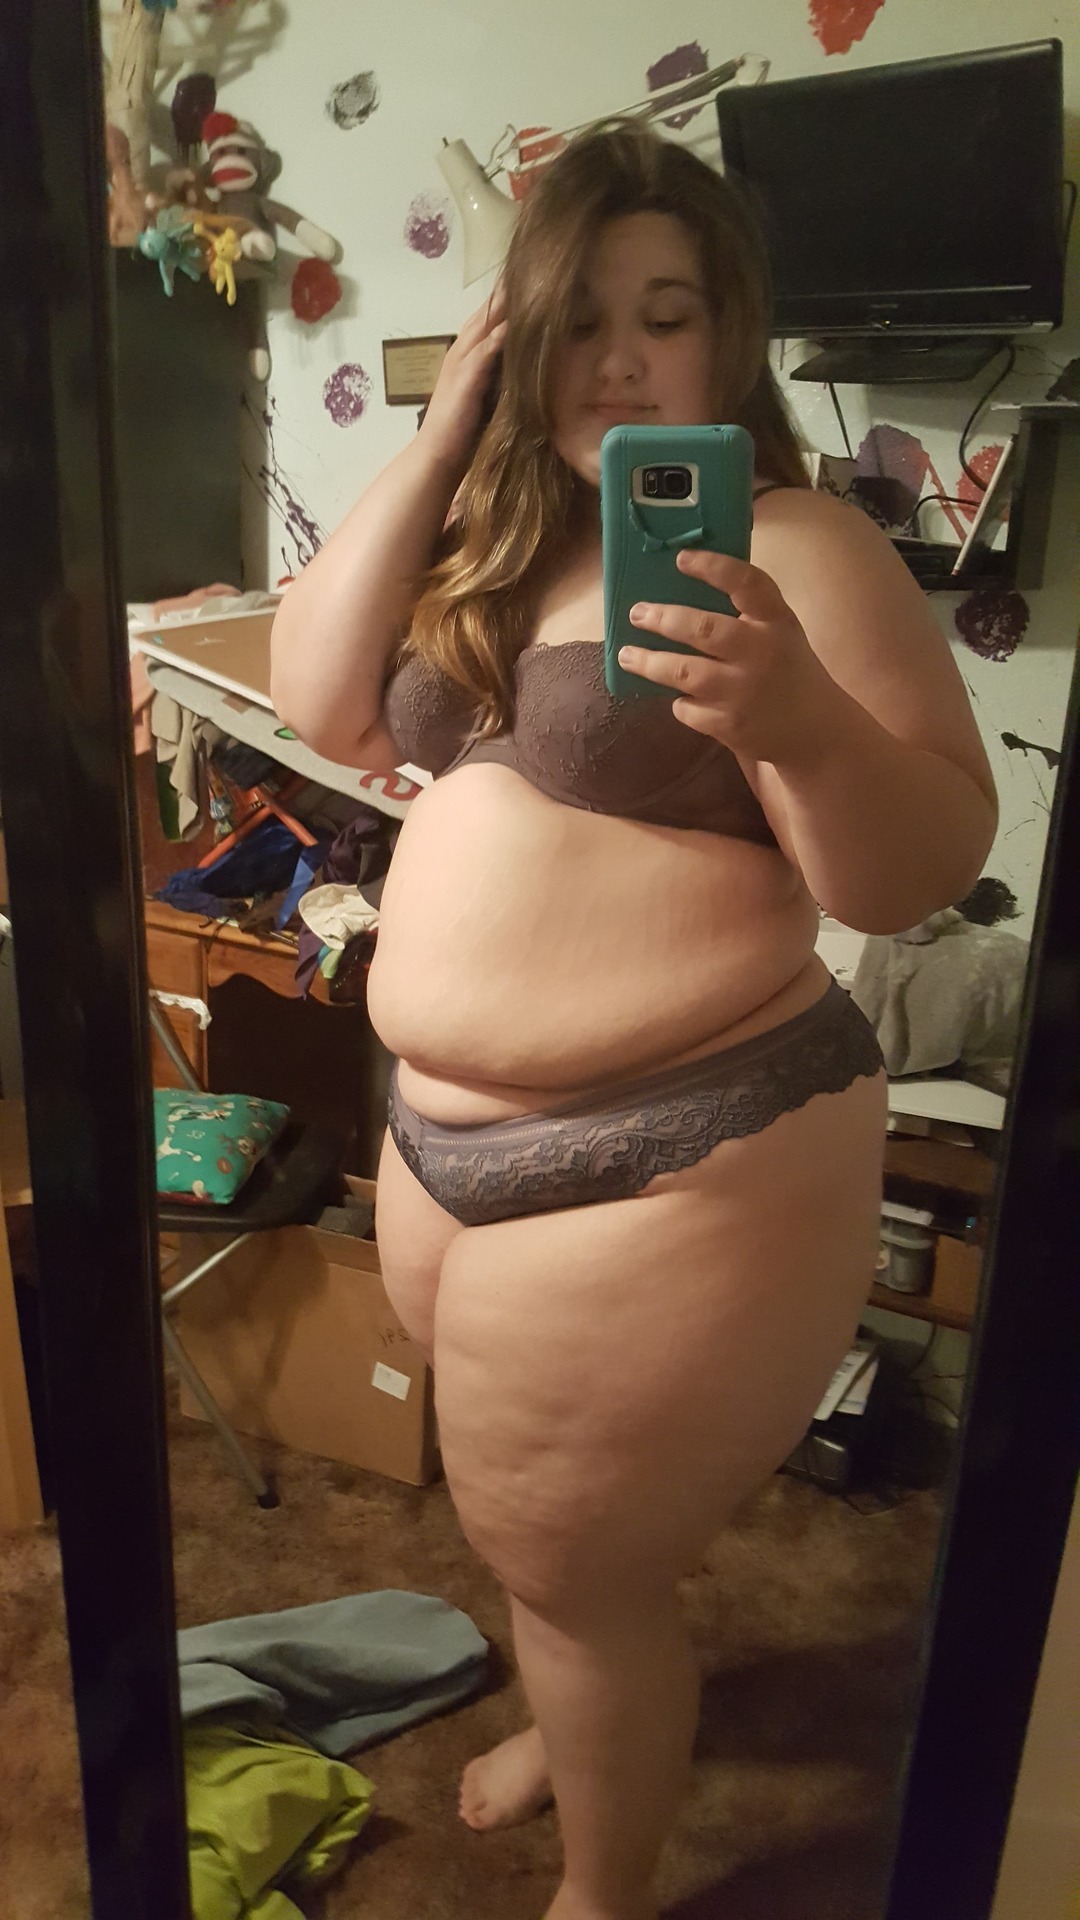 chubby girl selfie in panties naked video pics